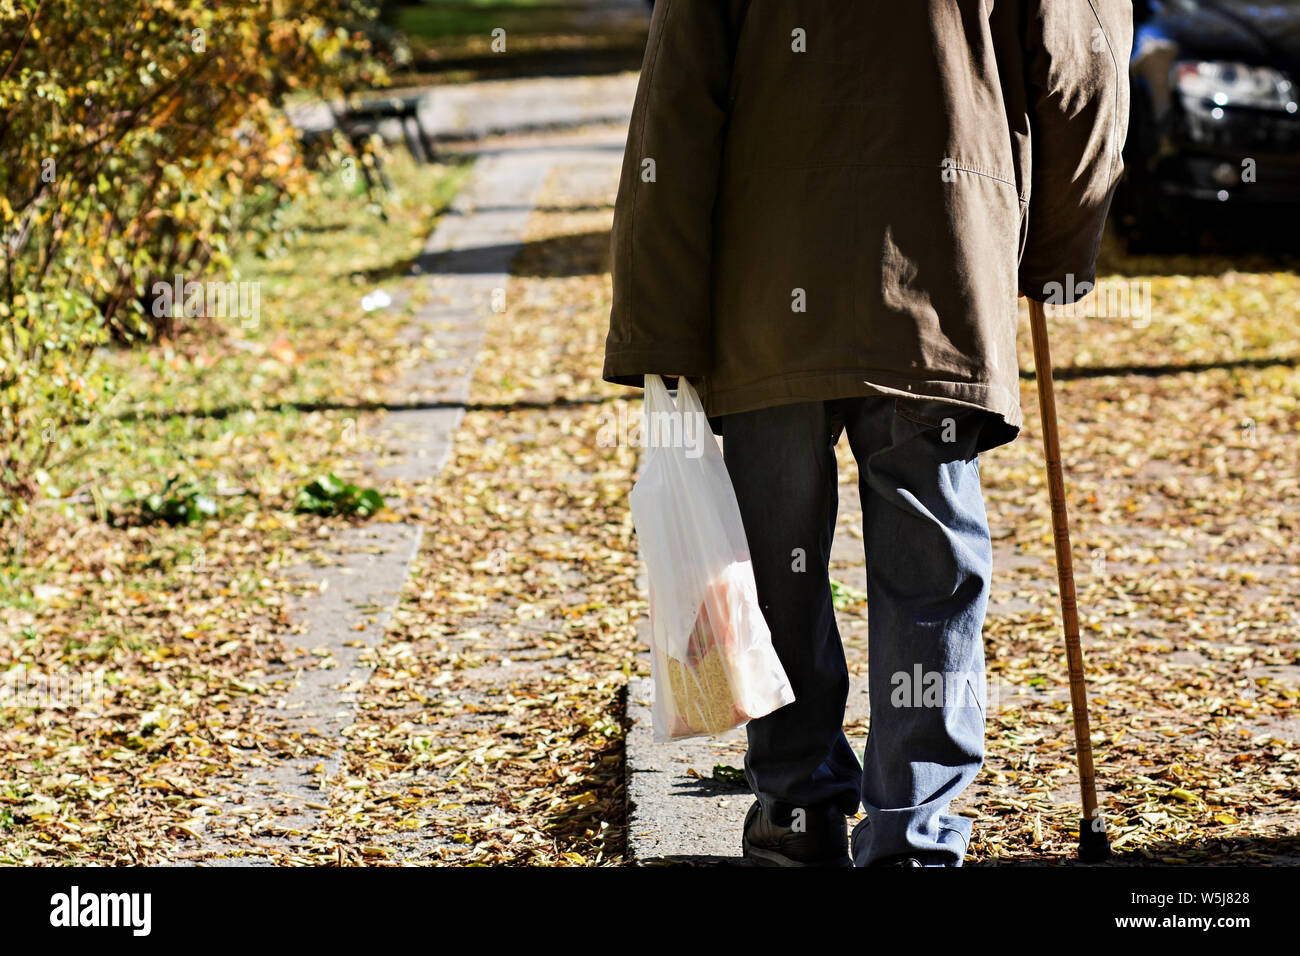 Alter Mann mit Stock auf den Weg/Alter Mann auf der Straße mit Stock/einsamen Spaziergang durch den Park - Bild Stockfoto